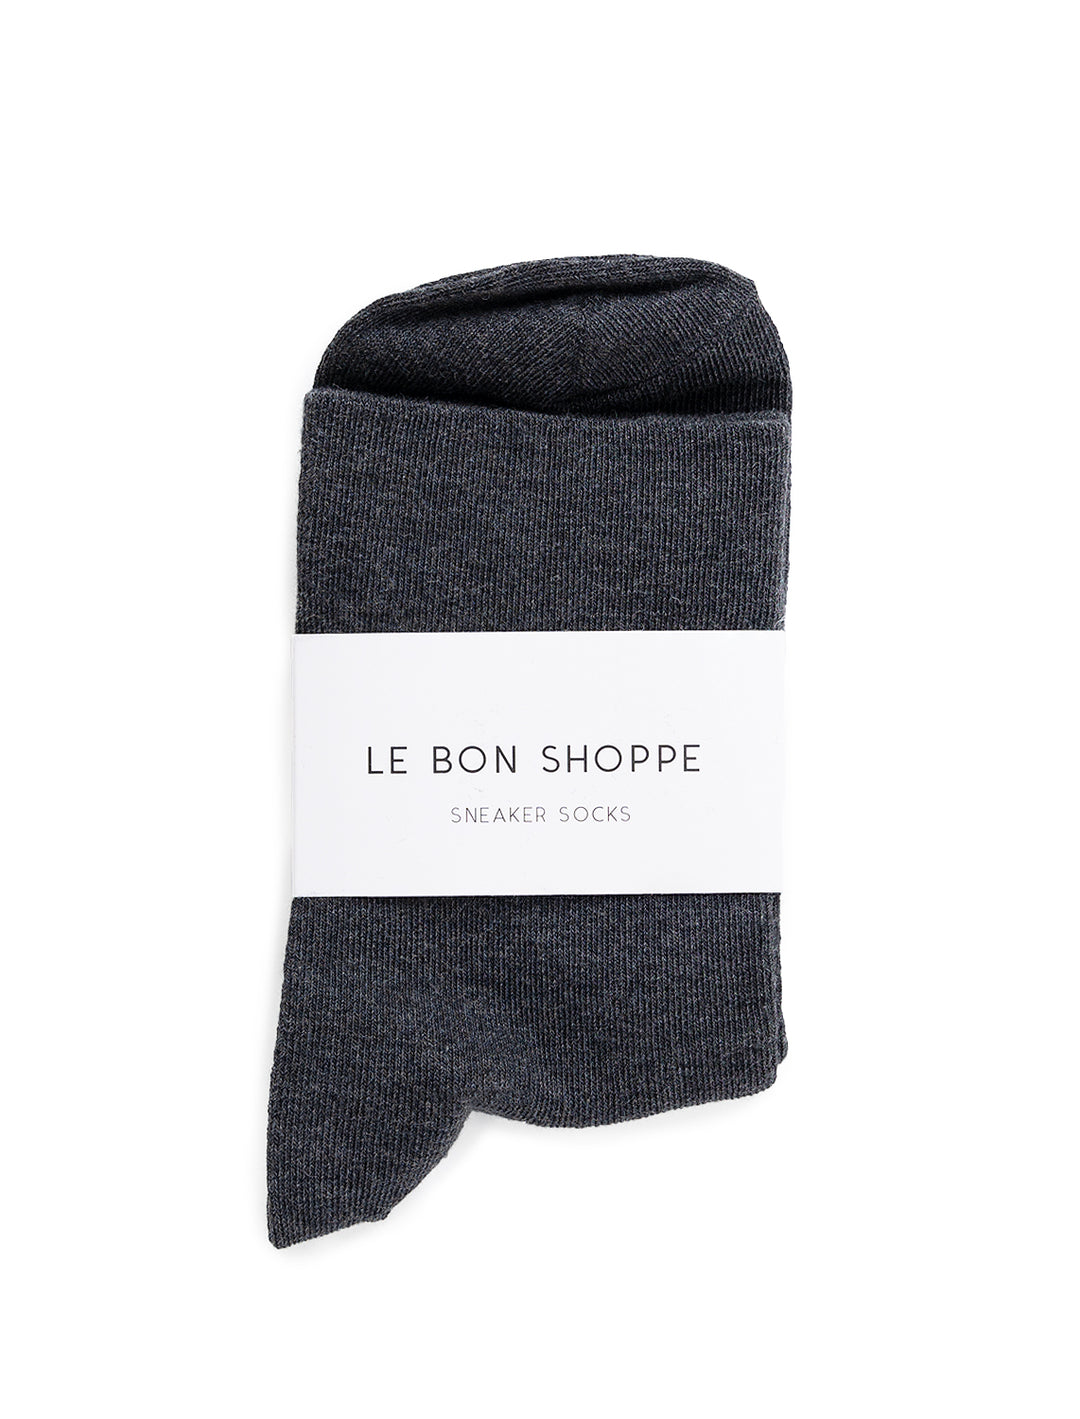 Overhead view of Le Bon Shoppe's sneaker socks in heather black.